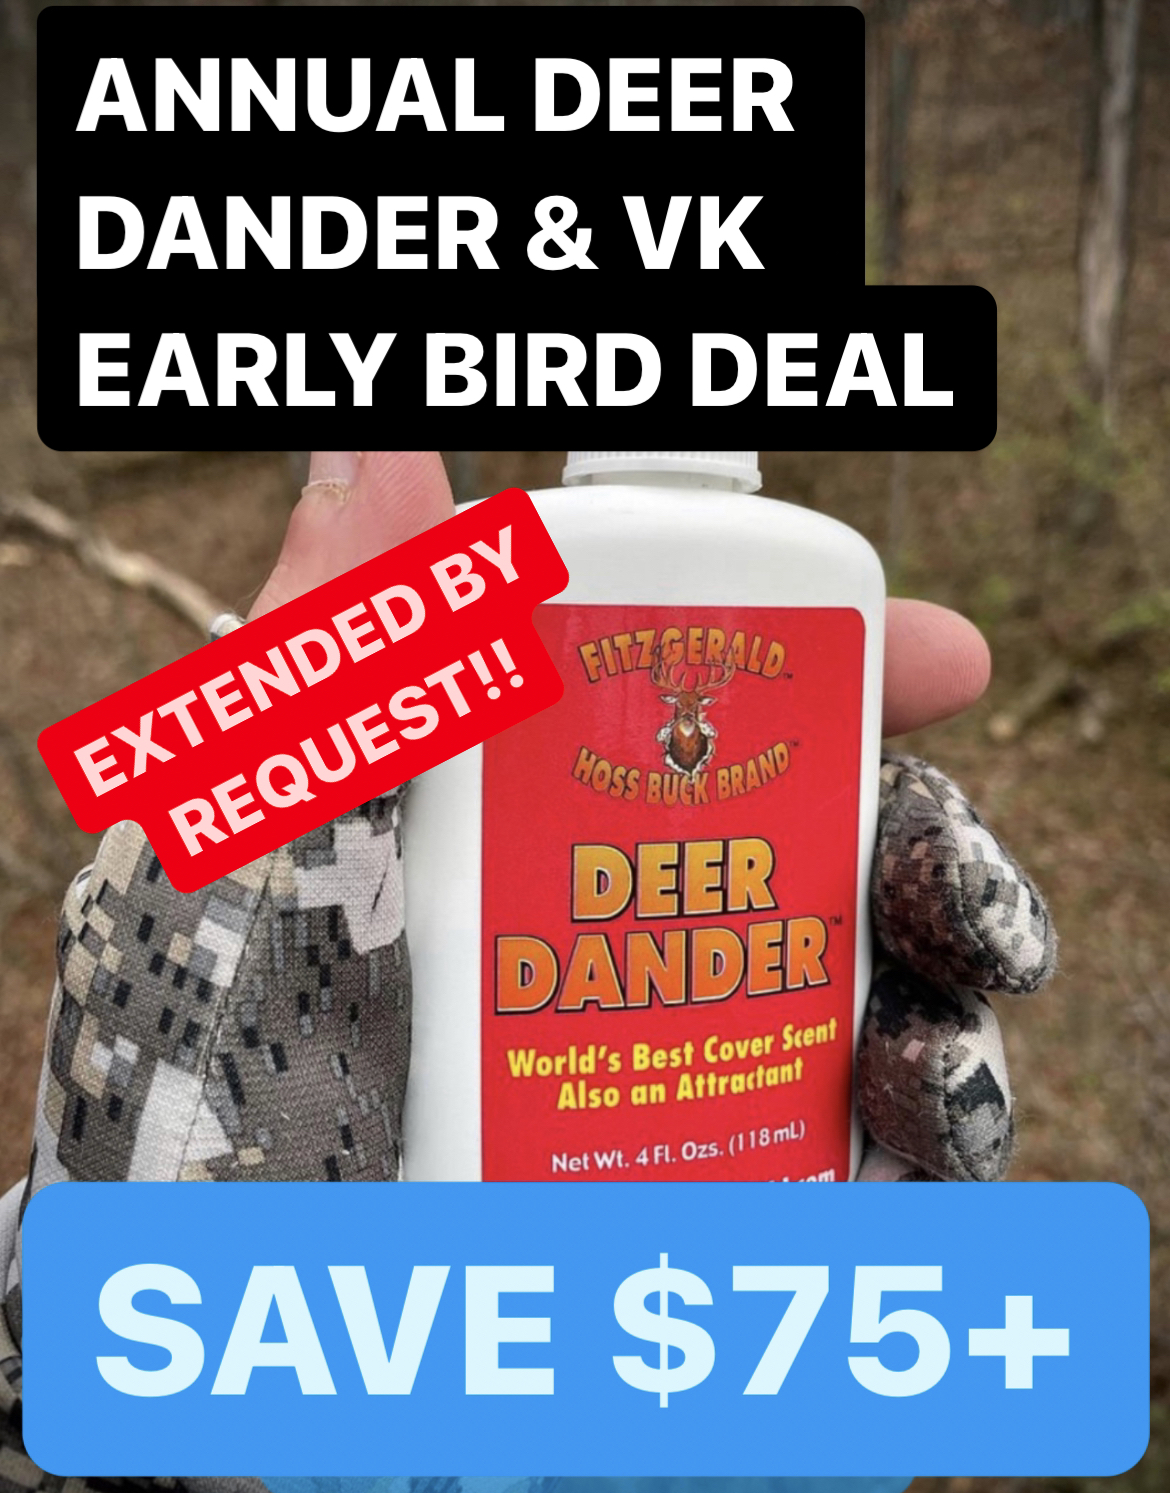 DEER DANDER EARLY BIRD PAYDAY 6 PACK + 1 VK DEEP DEAL